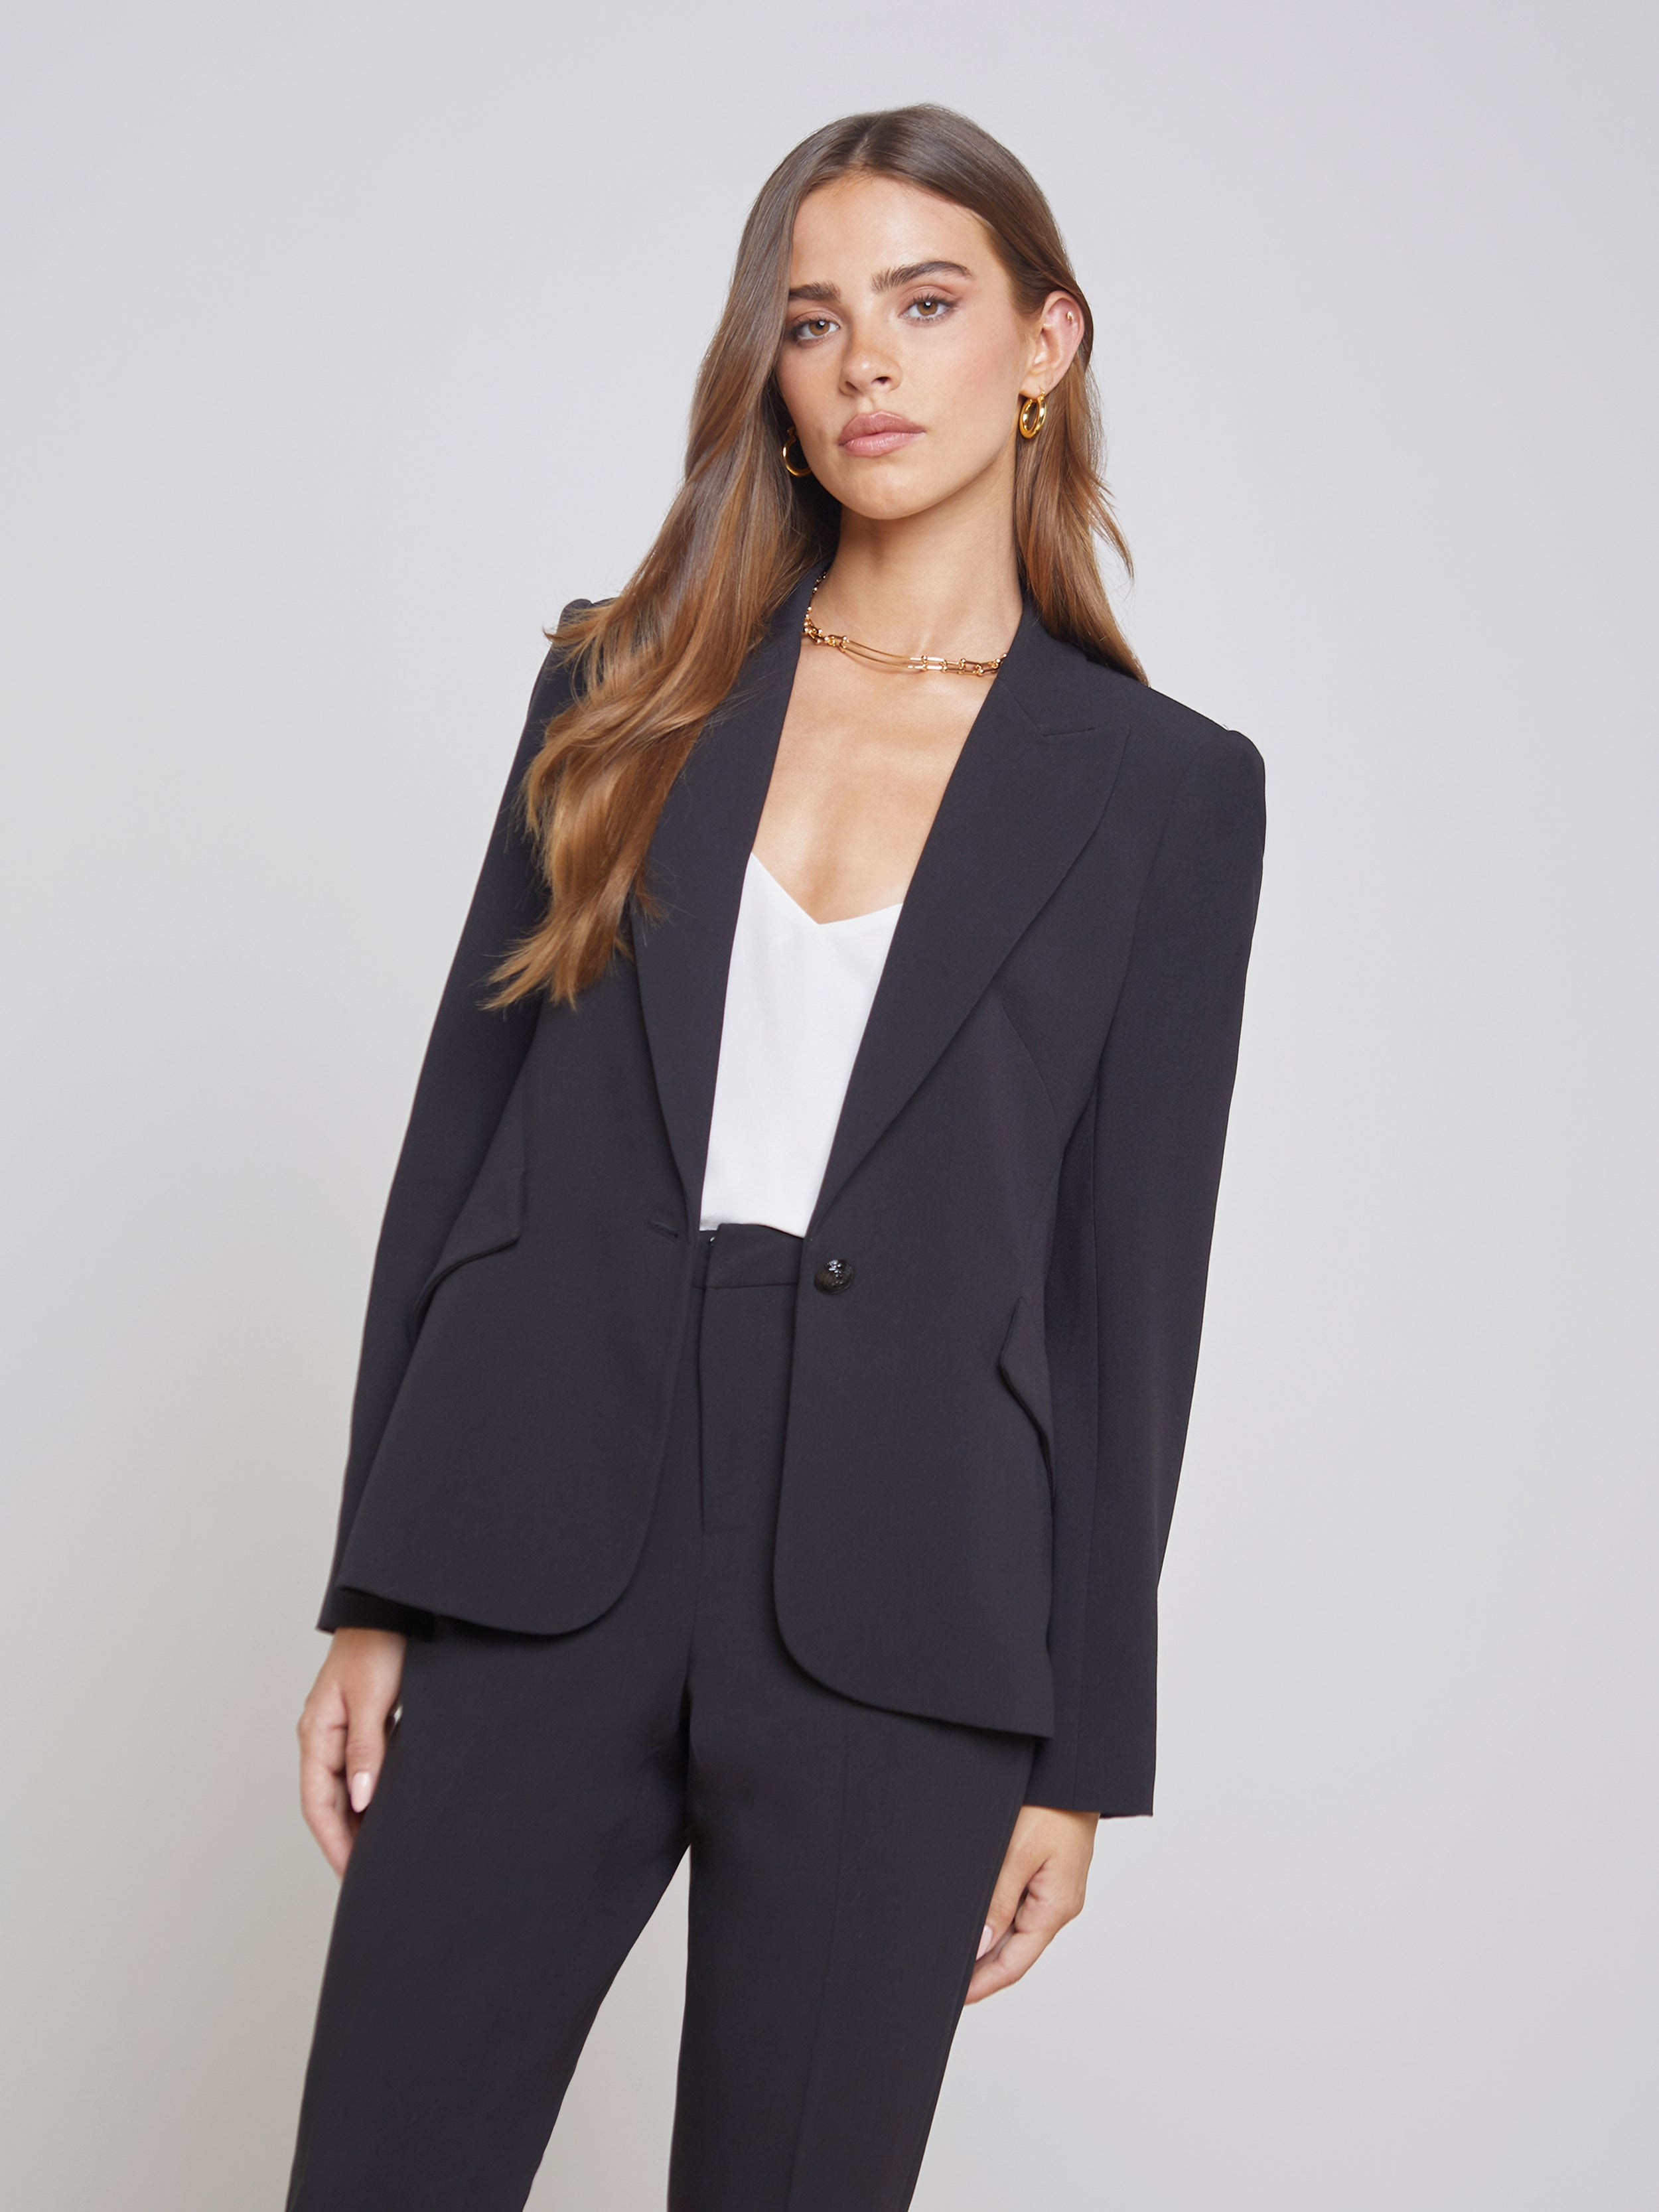 Le Suit Pant Suit Size 8 Womens Black Cinched waist jacket EUC-no